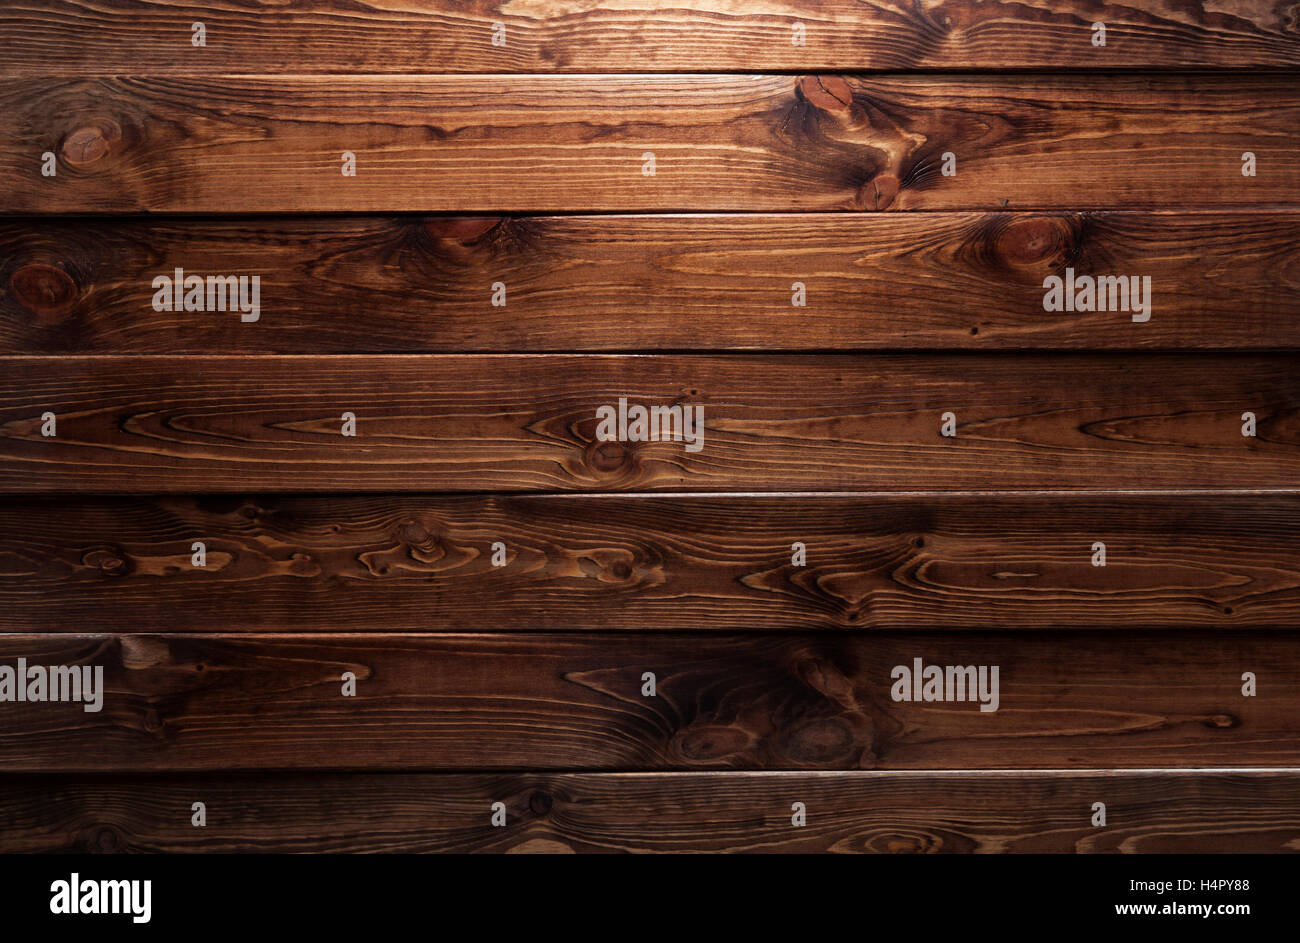 Dunkles Holz Textur. Hintergrund dunkel alte Holzplatten. Stockfoto